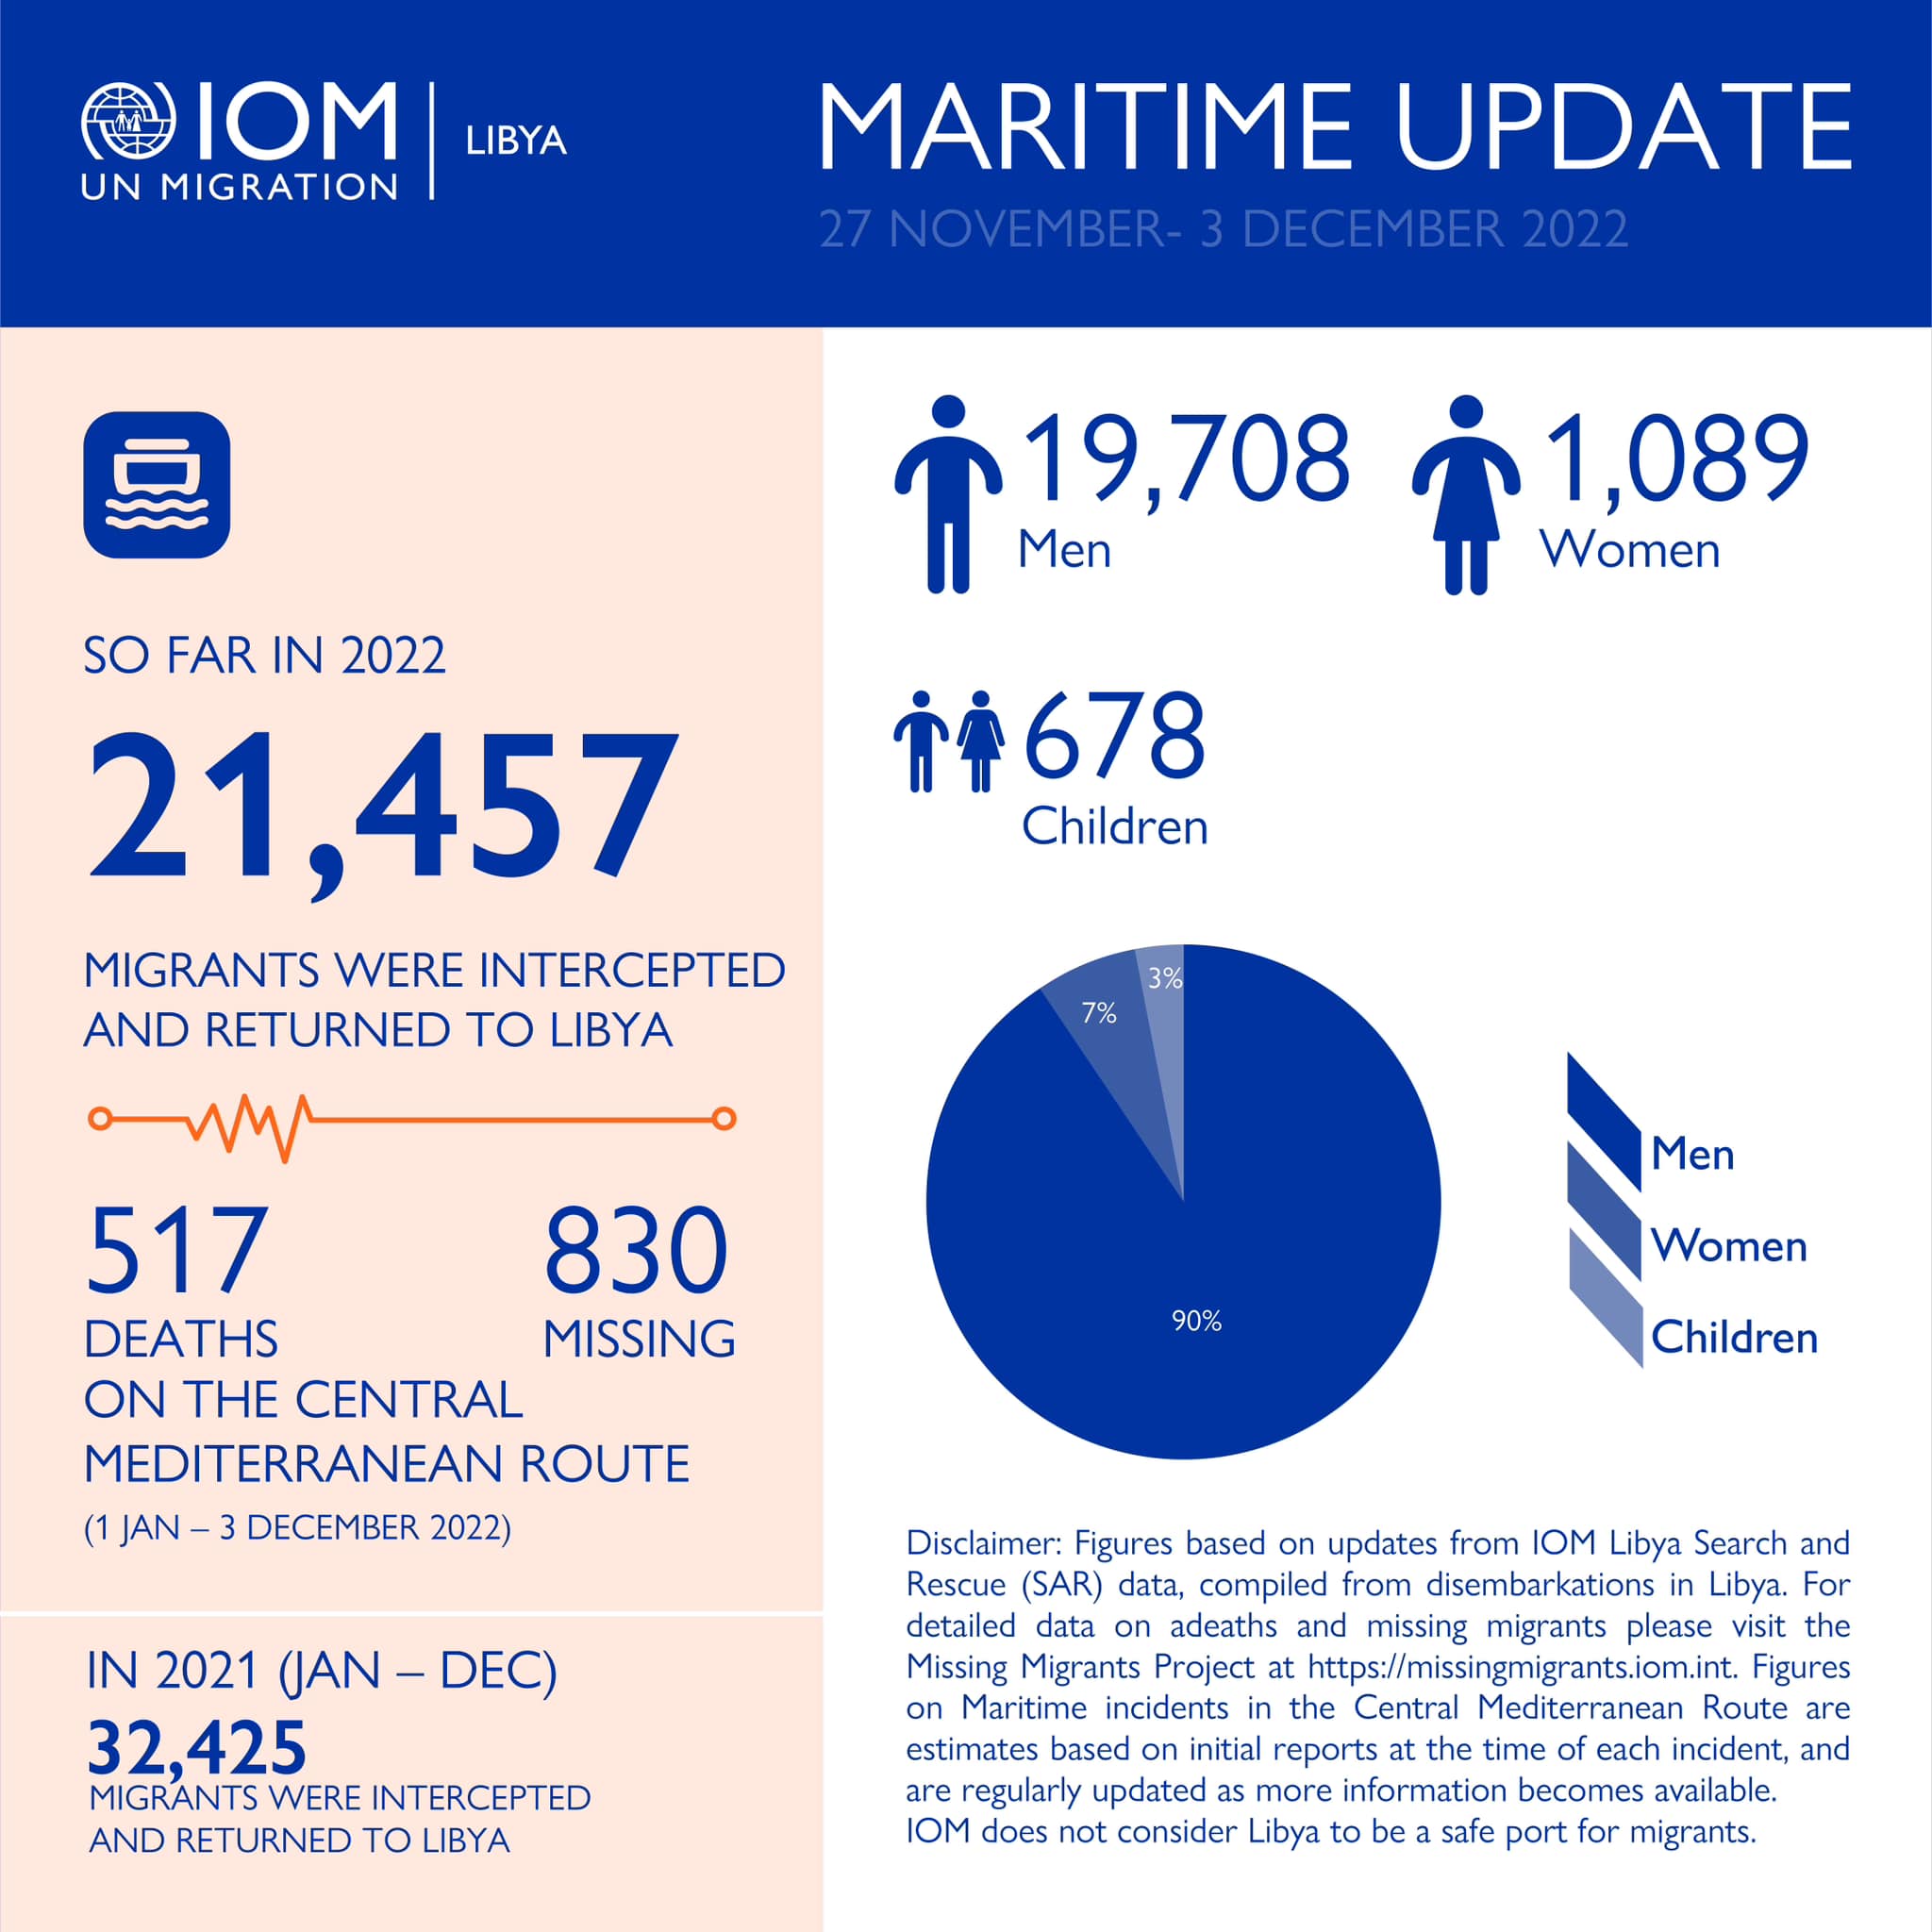 المنظمة الدولية للهجرة: إعادة (21457) مهاجرًا إلى ليبيا خلال العام الجاري